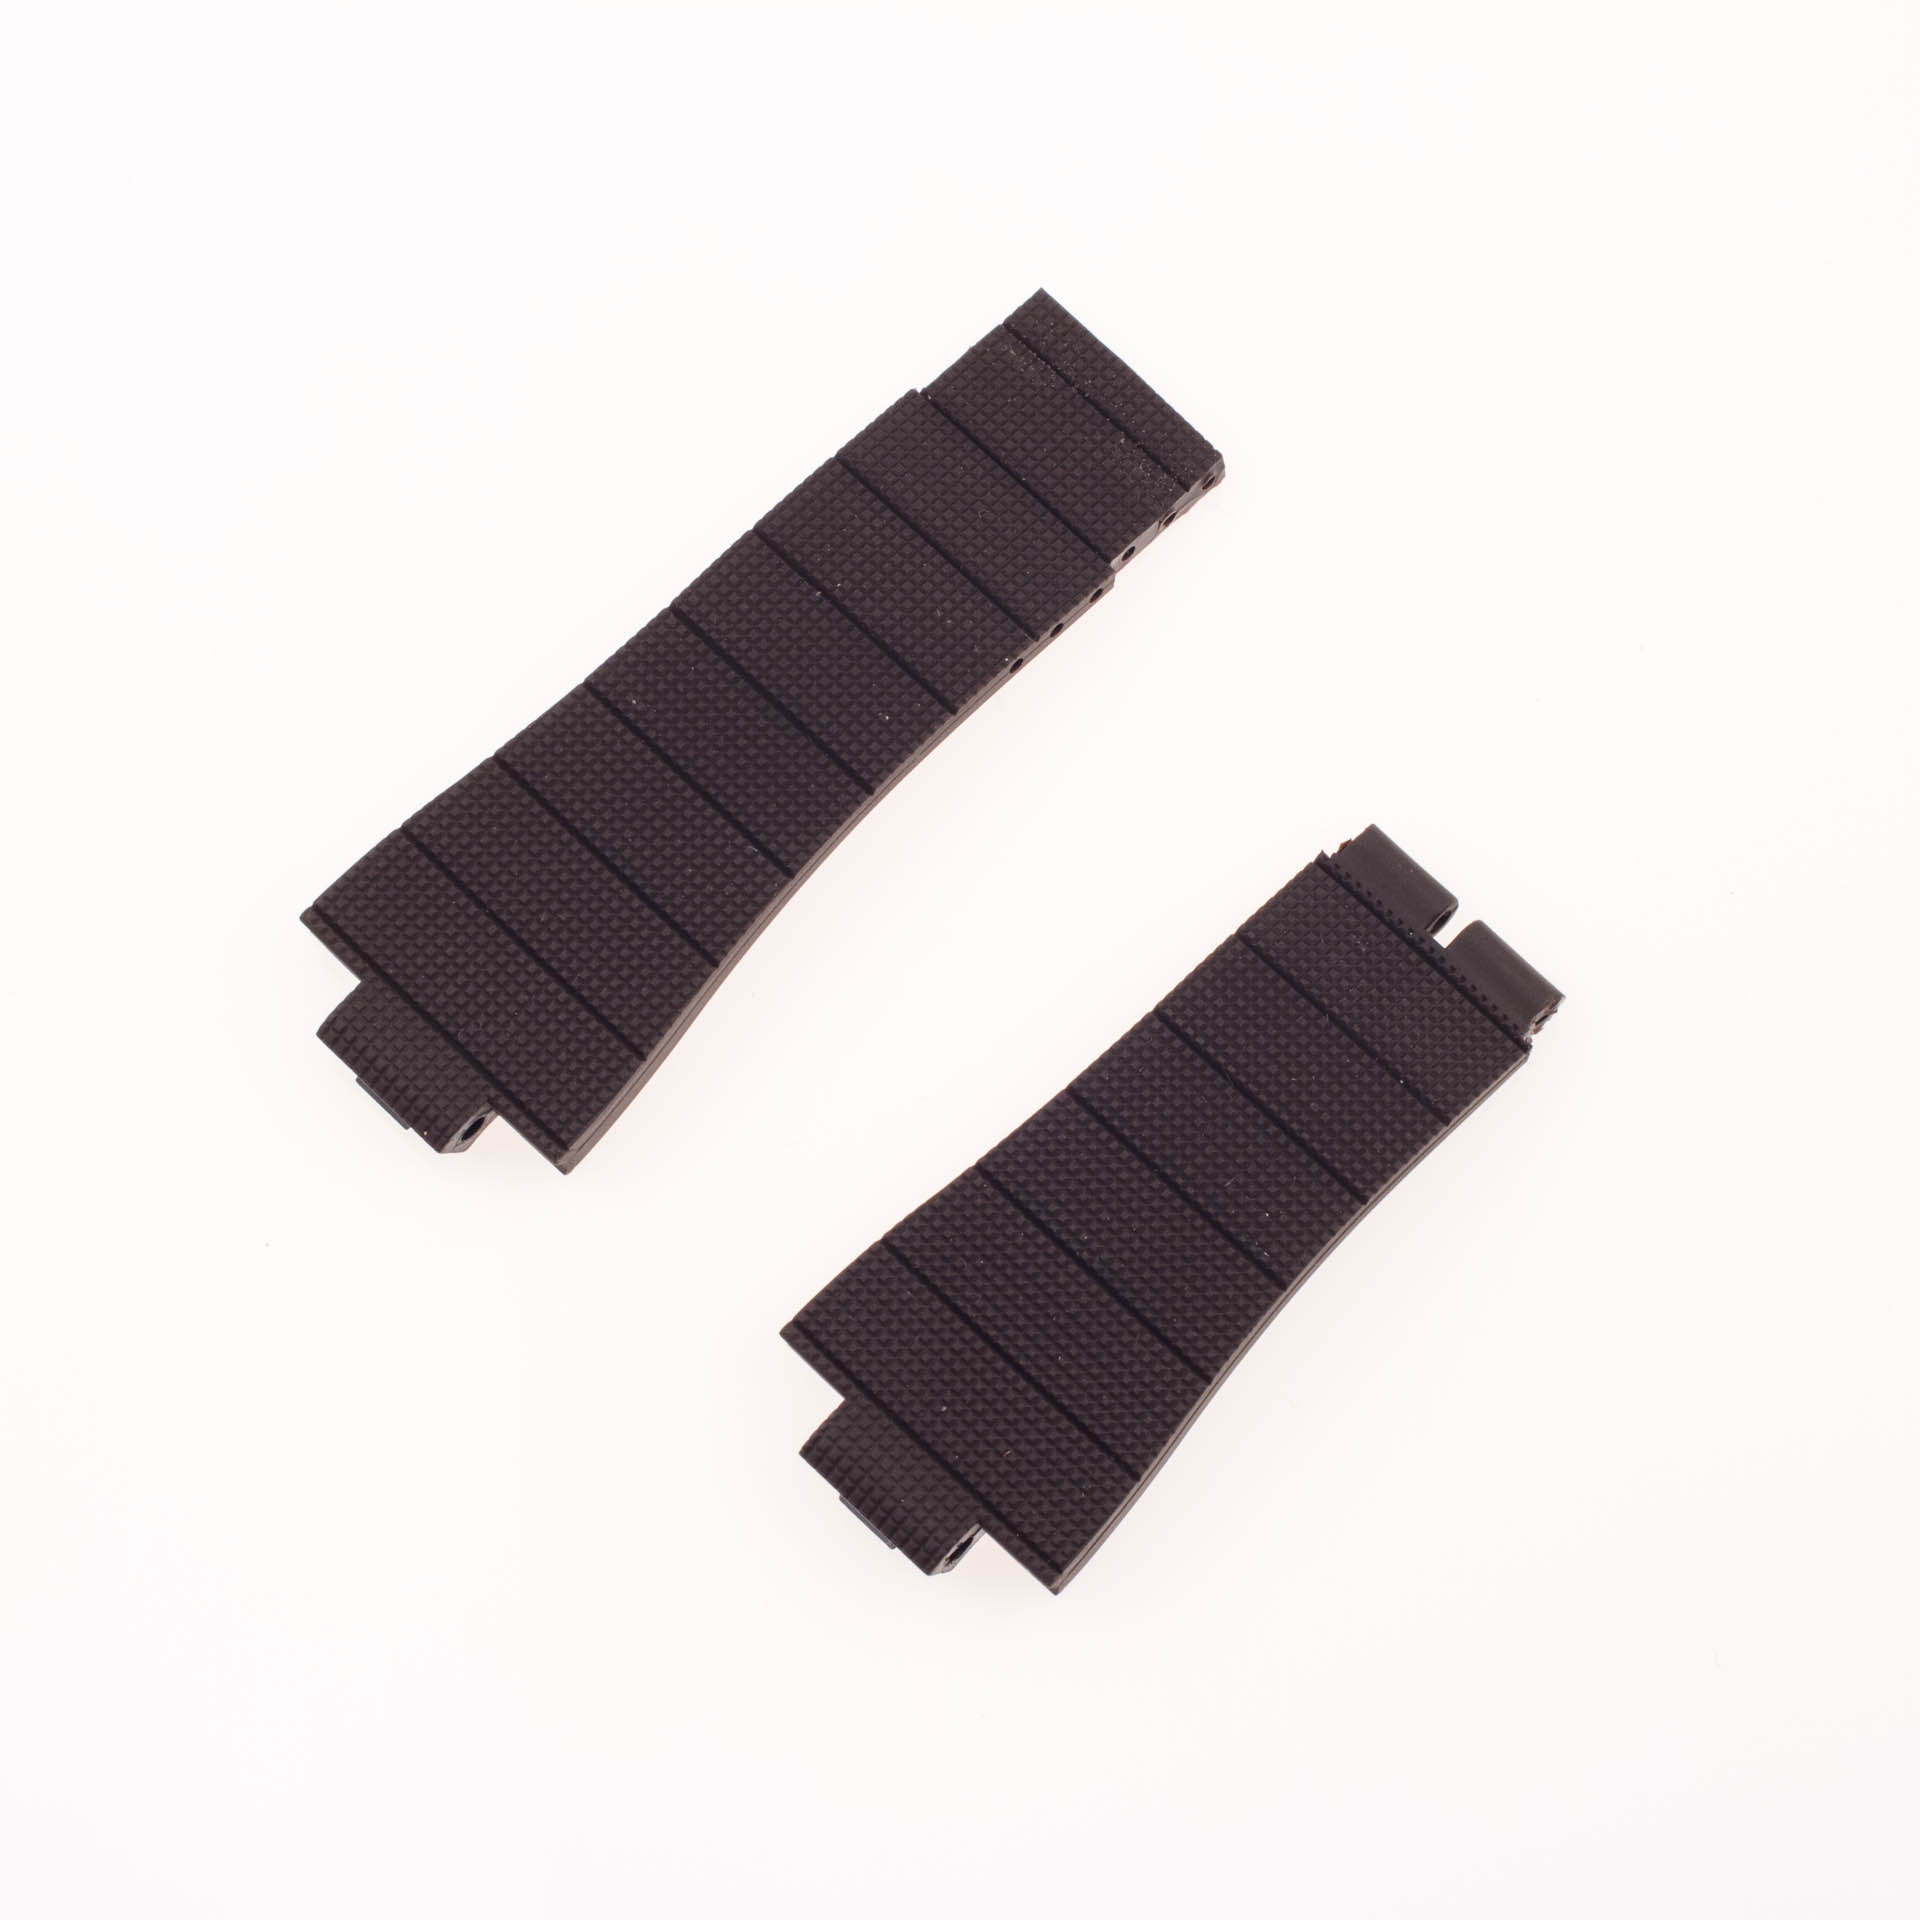 Roger Dubuis Acquamare dark brown rubber strap (27x21)